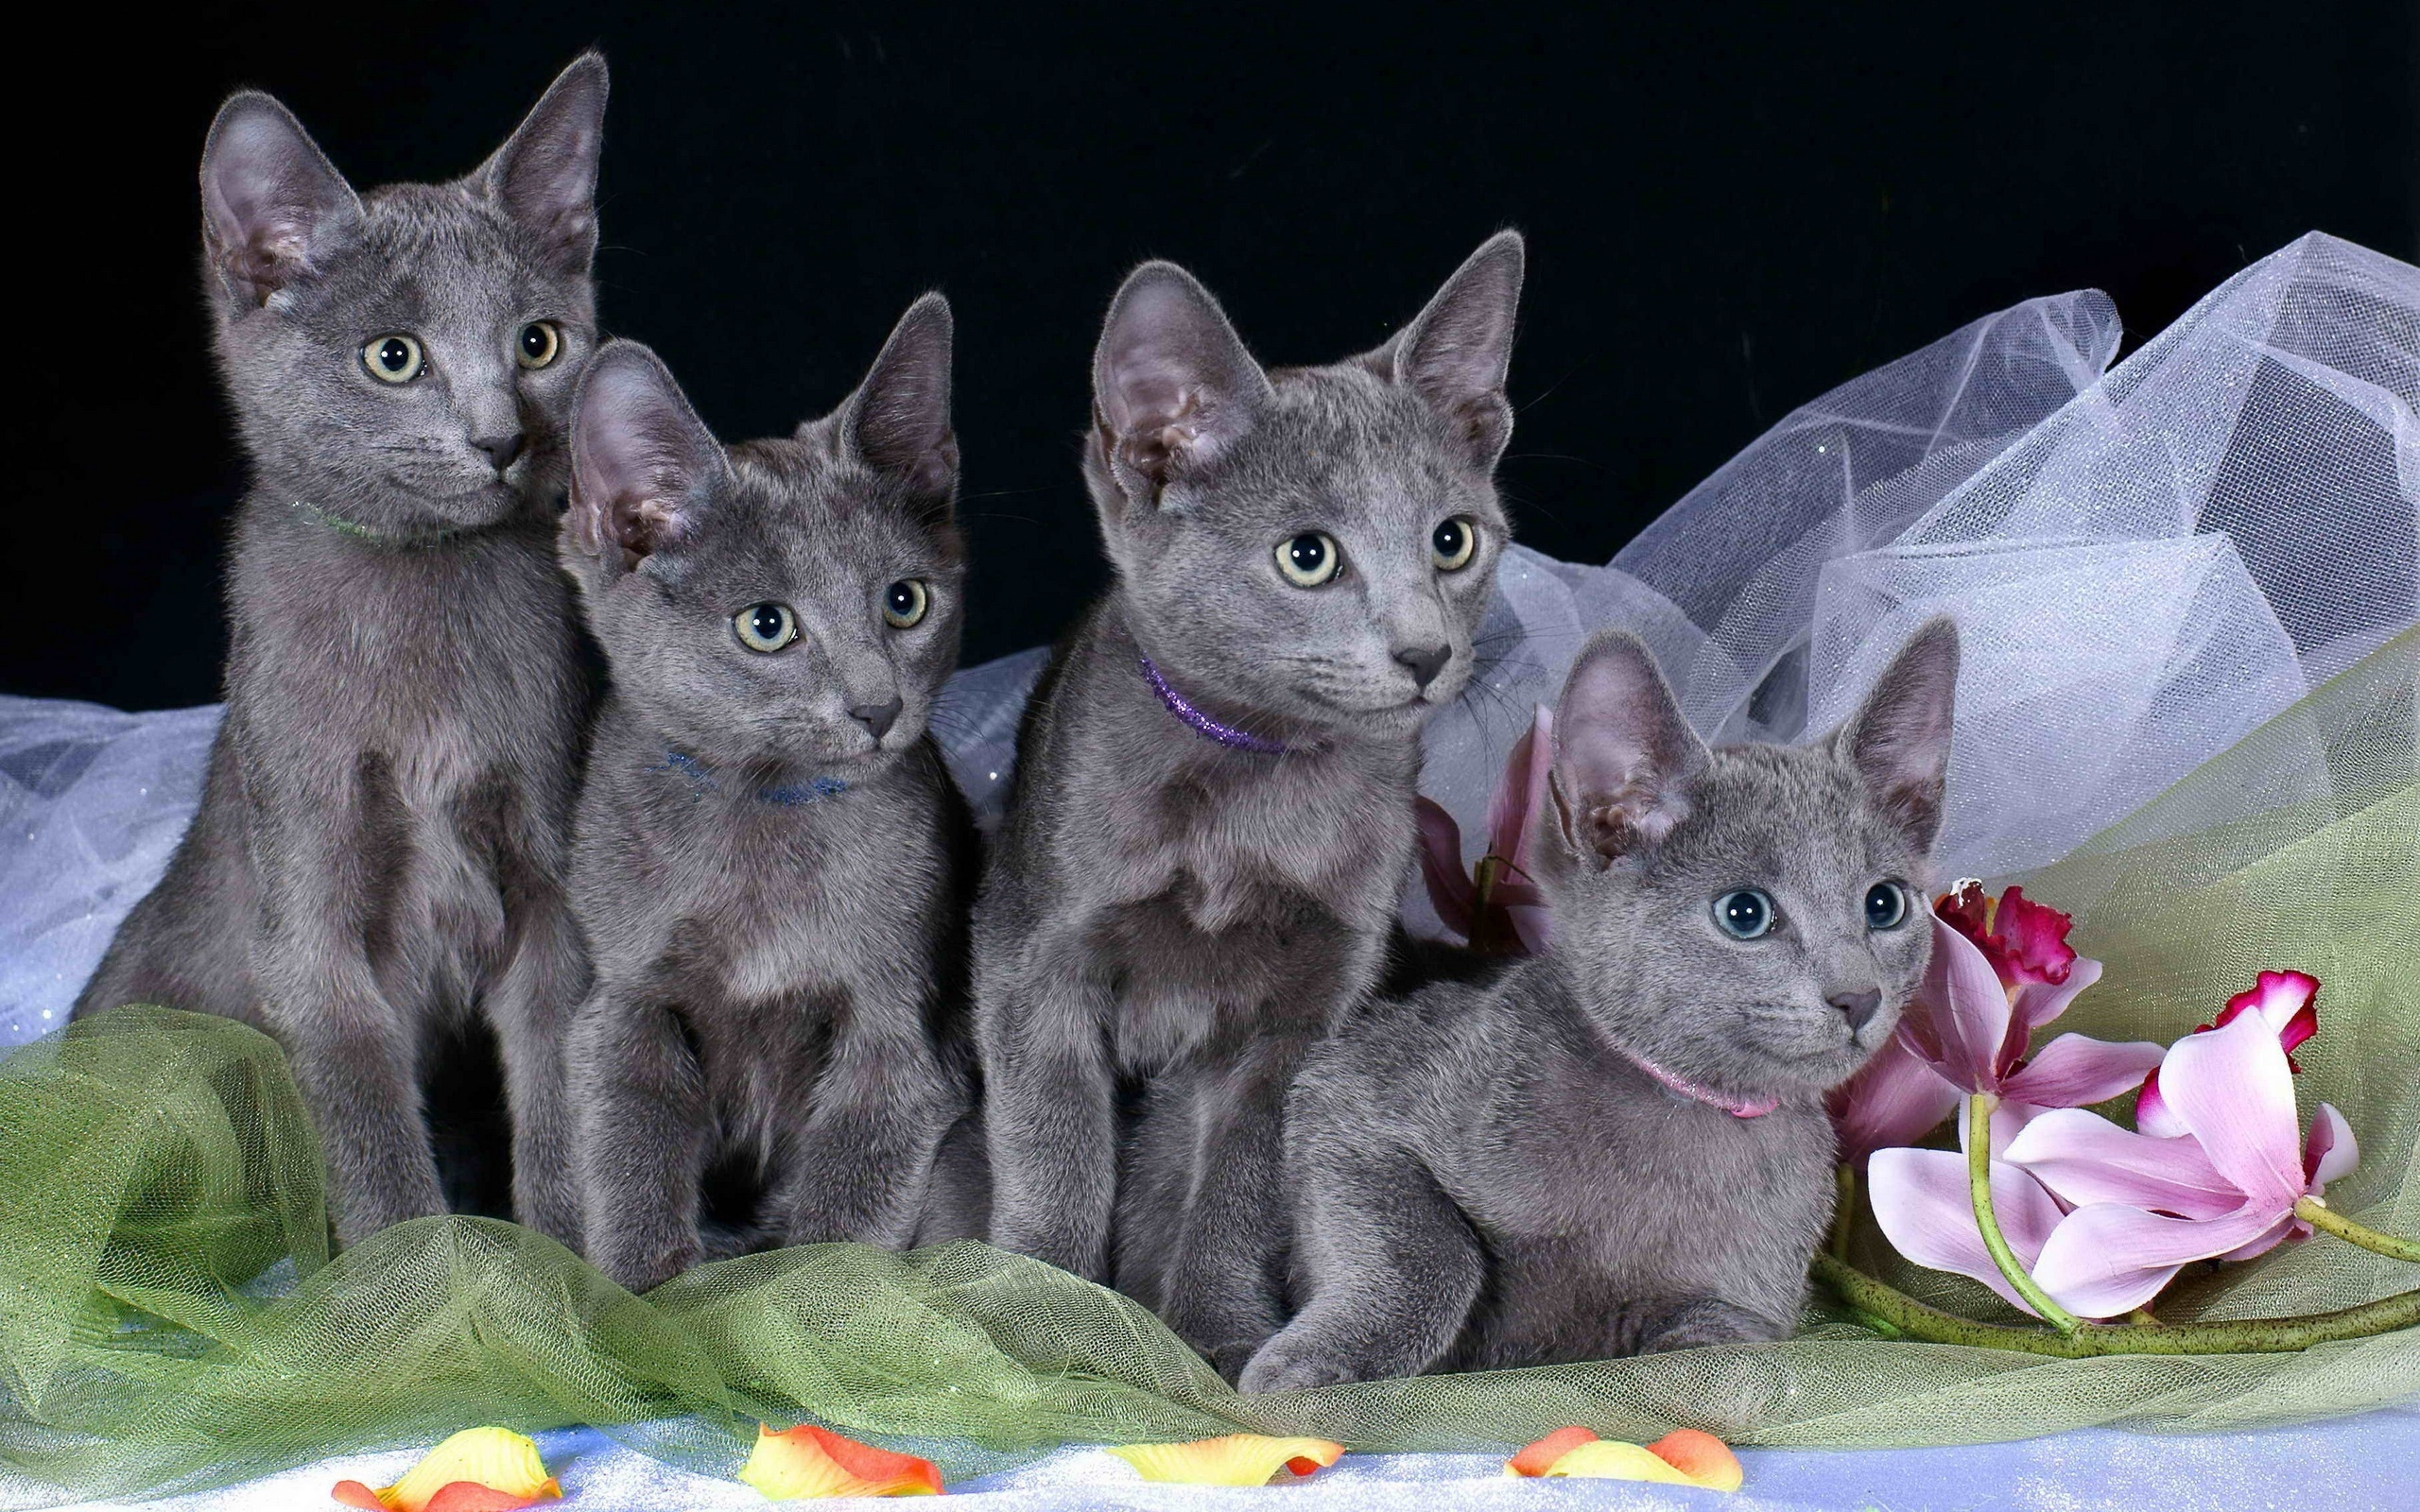 Four identical kittens